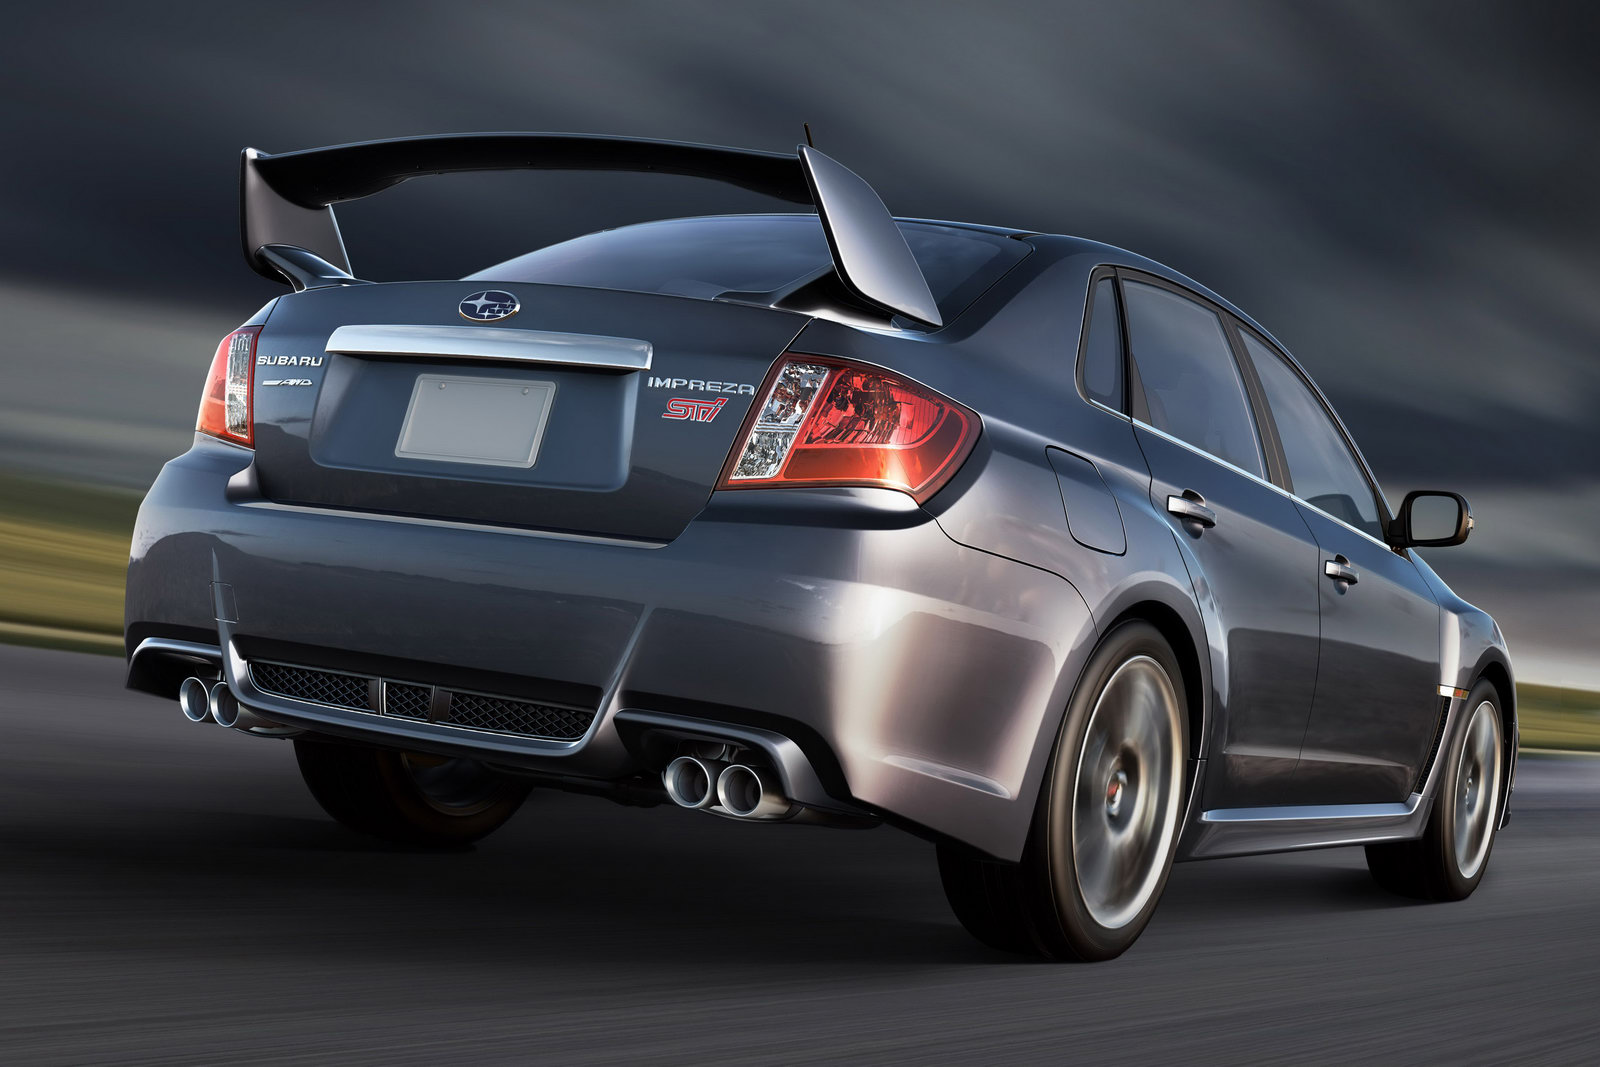 2011 Subaru Impreza WRX and STI Pricing Announced, New STI